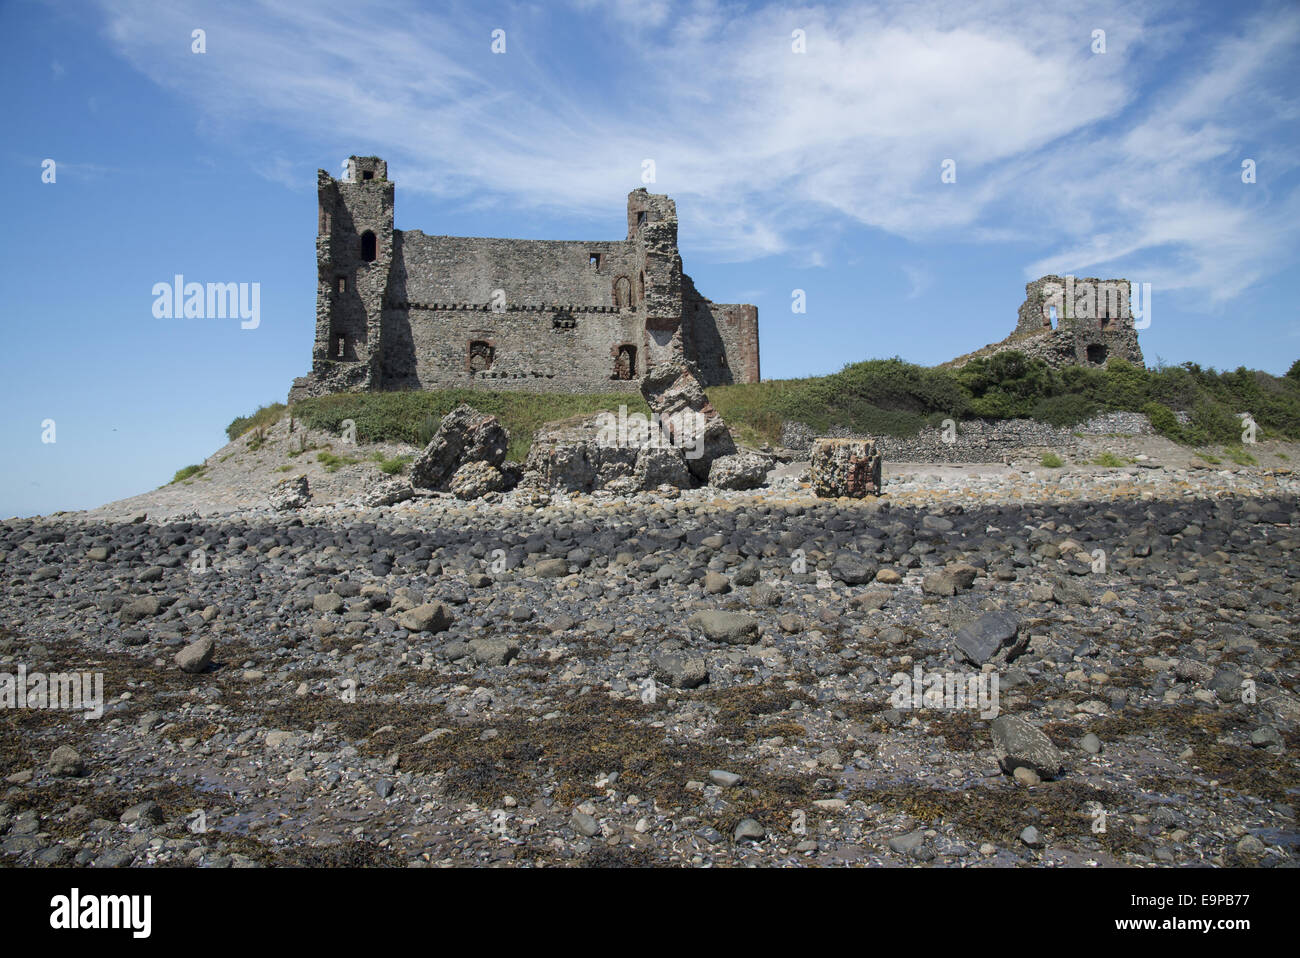 Vue sur plage rocheuse et château en ruine, Piel Castle, Piel Island, îles de Furness, Barrow-in-Furness, Cumbria, Angleterre, juillet Banque D'Images